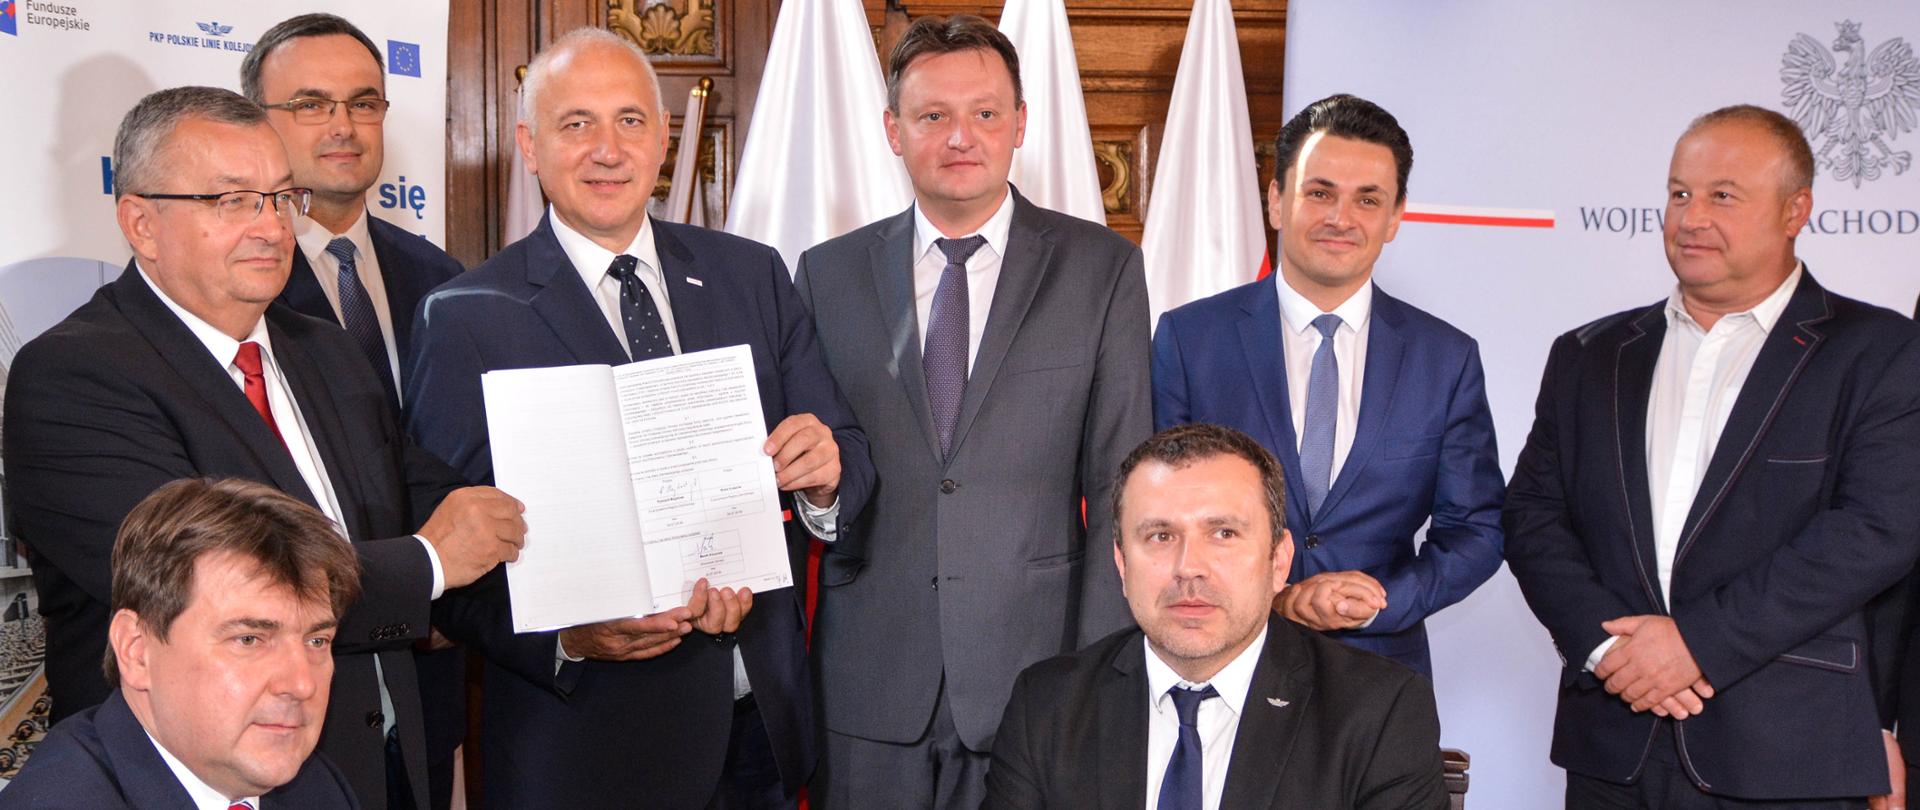 Podpisanie umowy na budowę Szczecińskiej Kolei Metropolitalnej